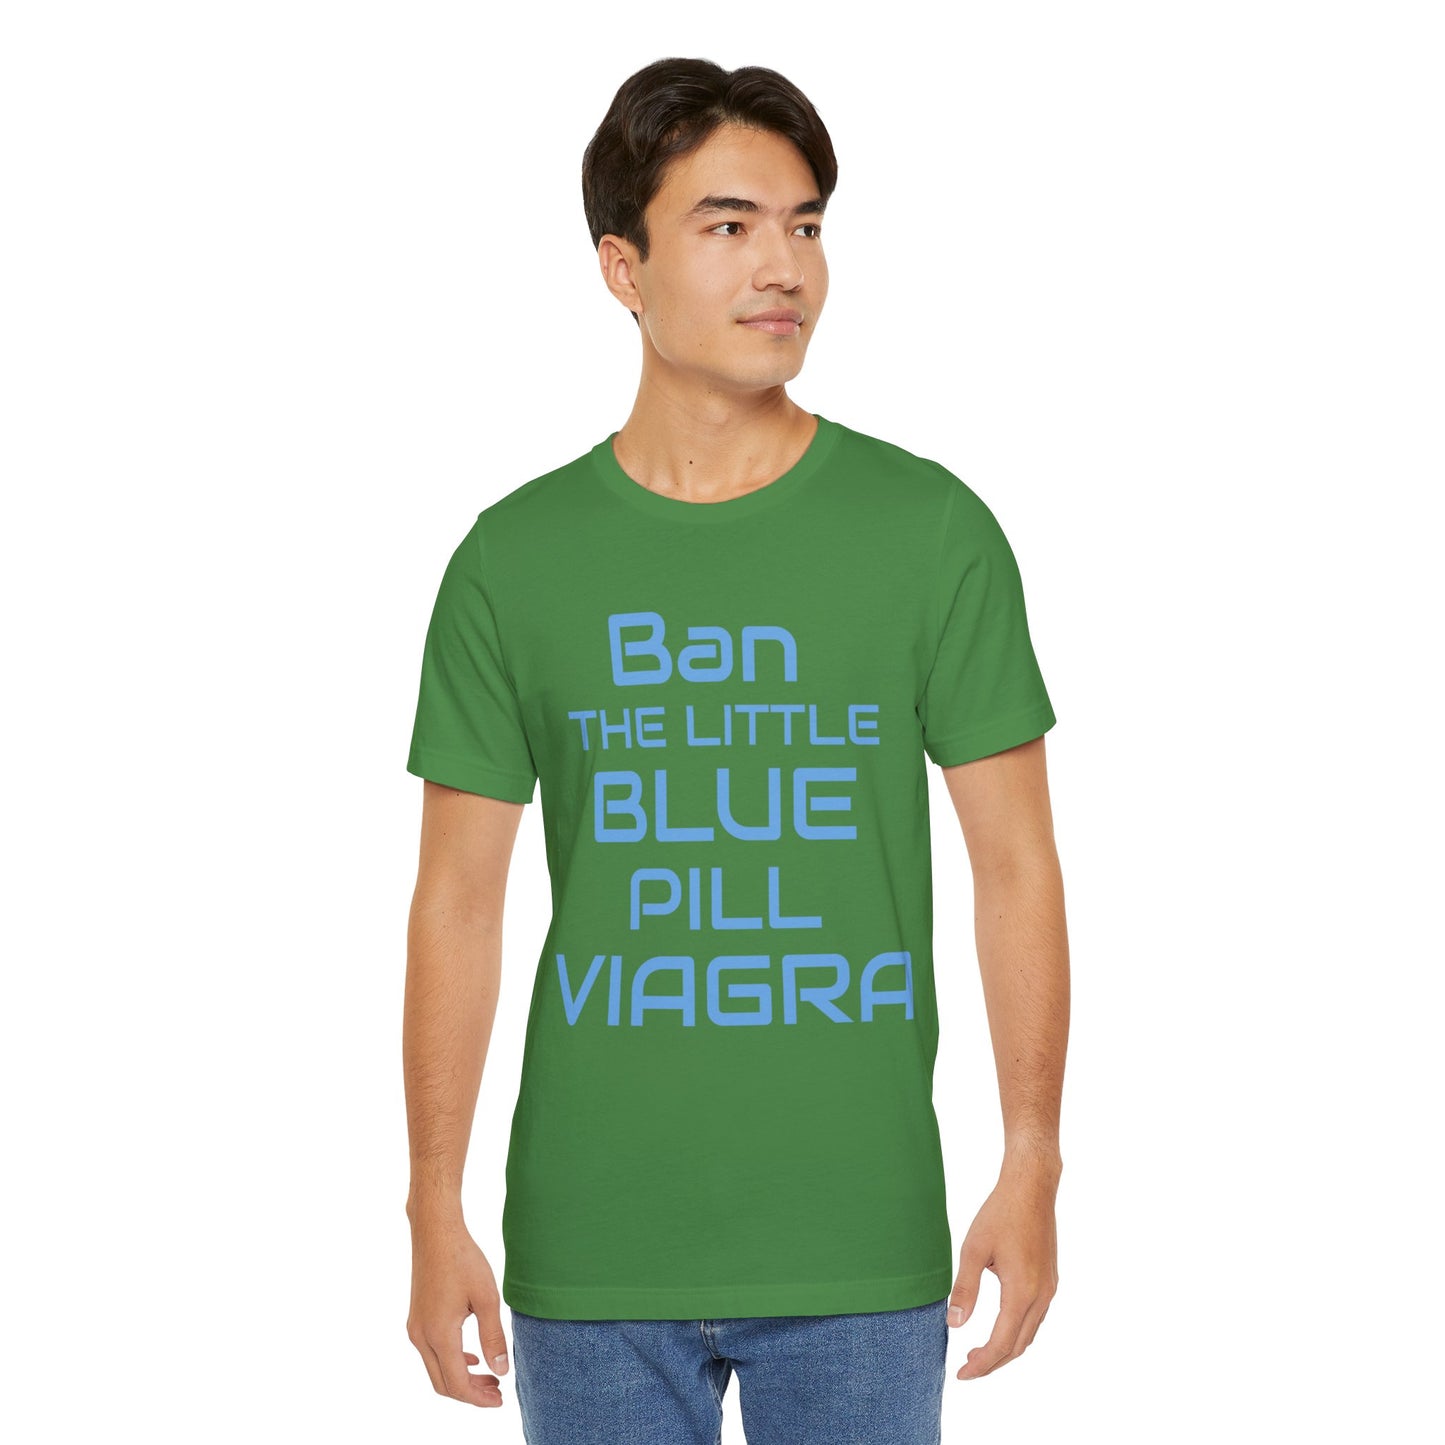 Ban The Little Blue Pill Viagra